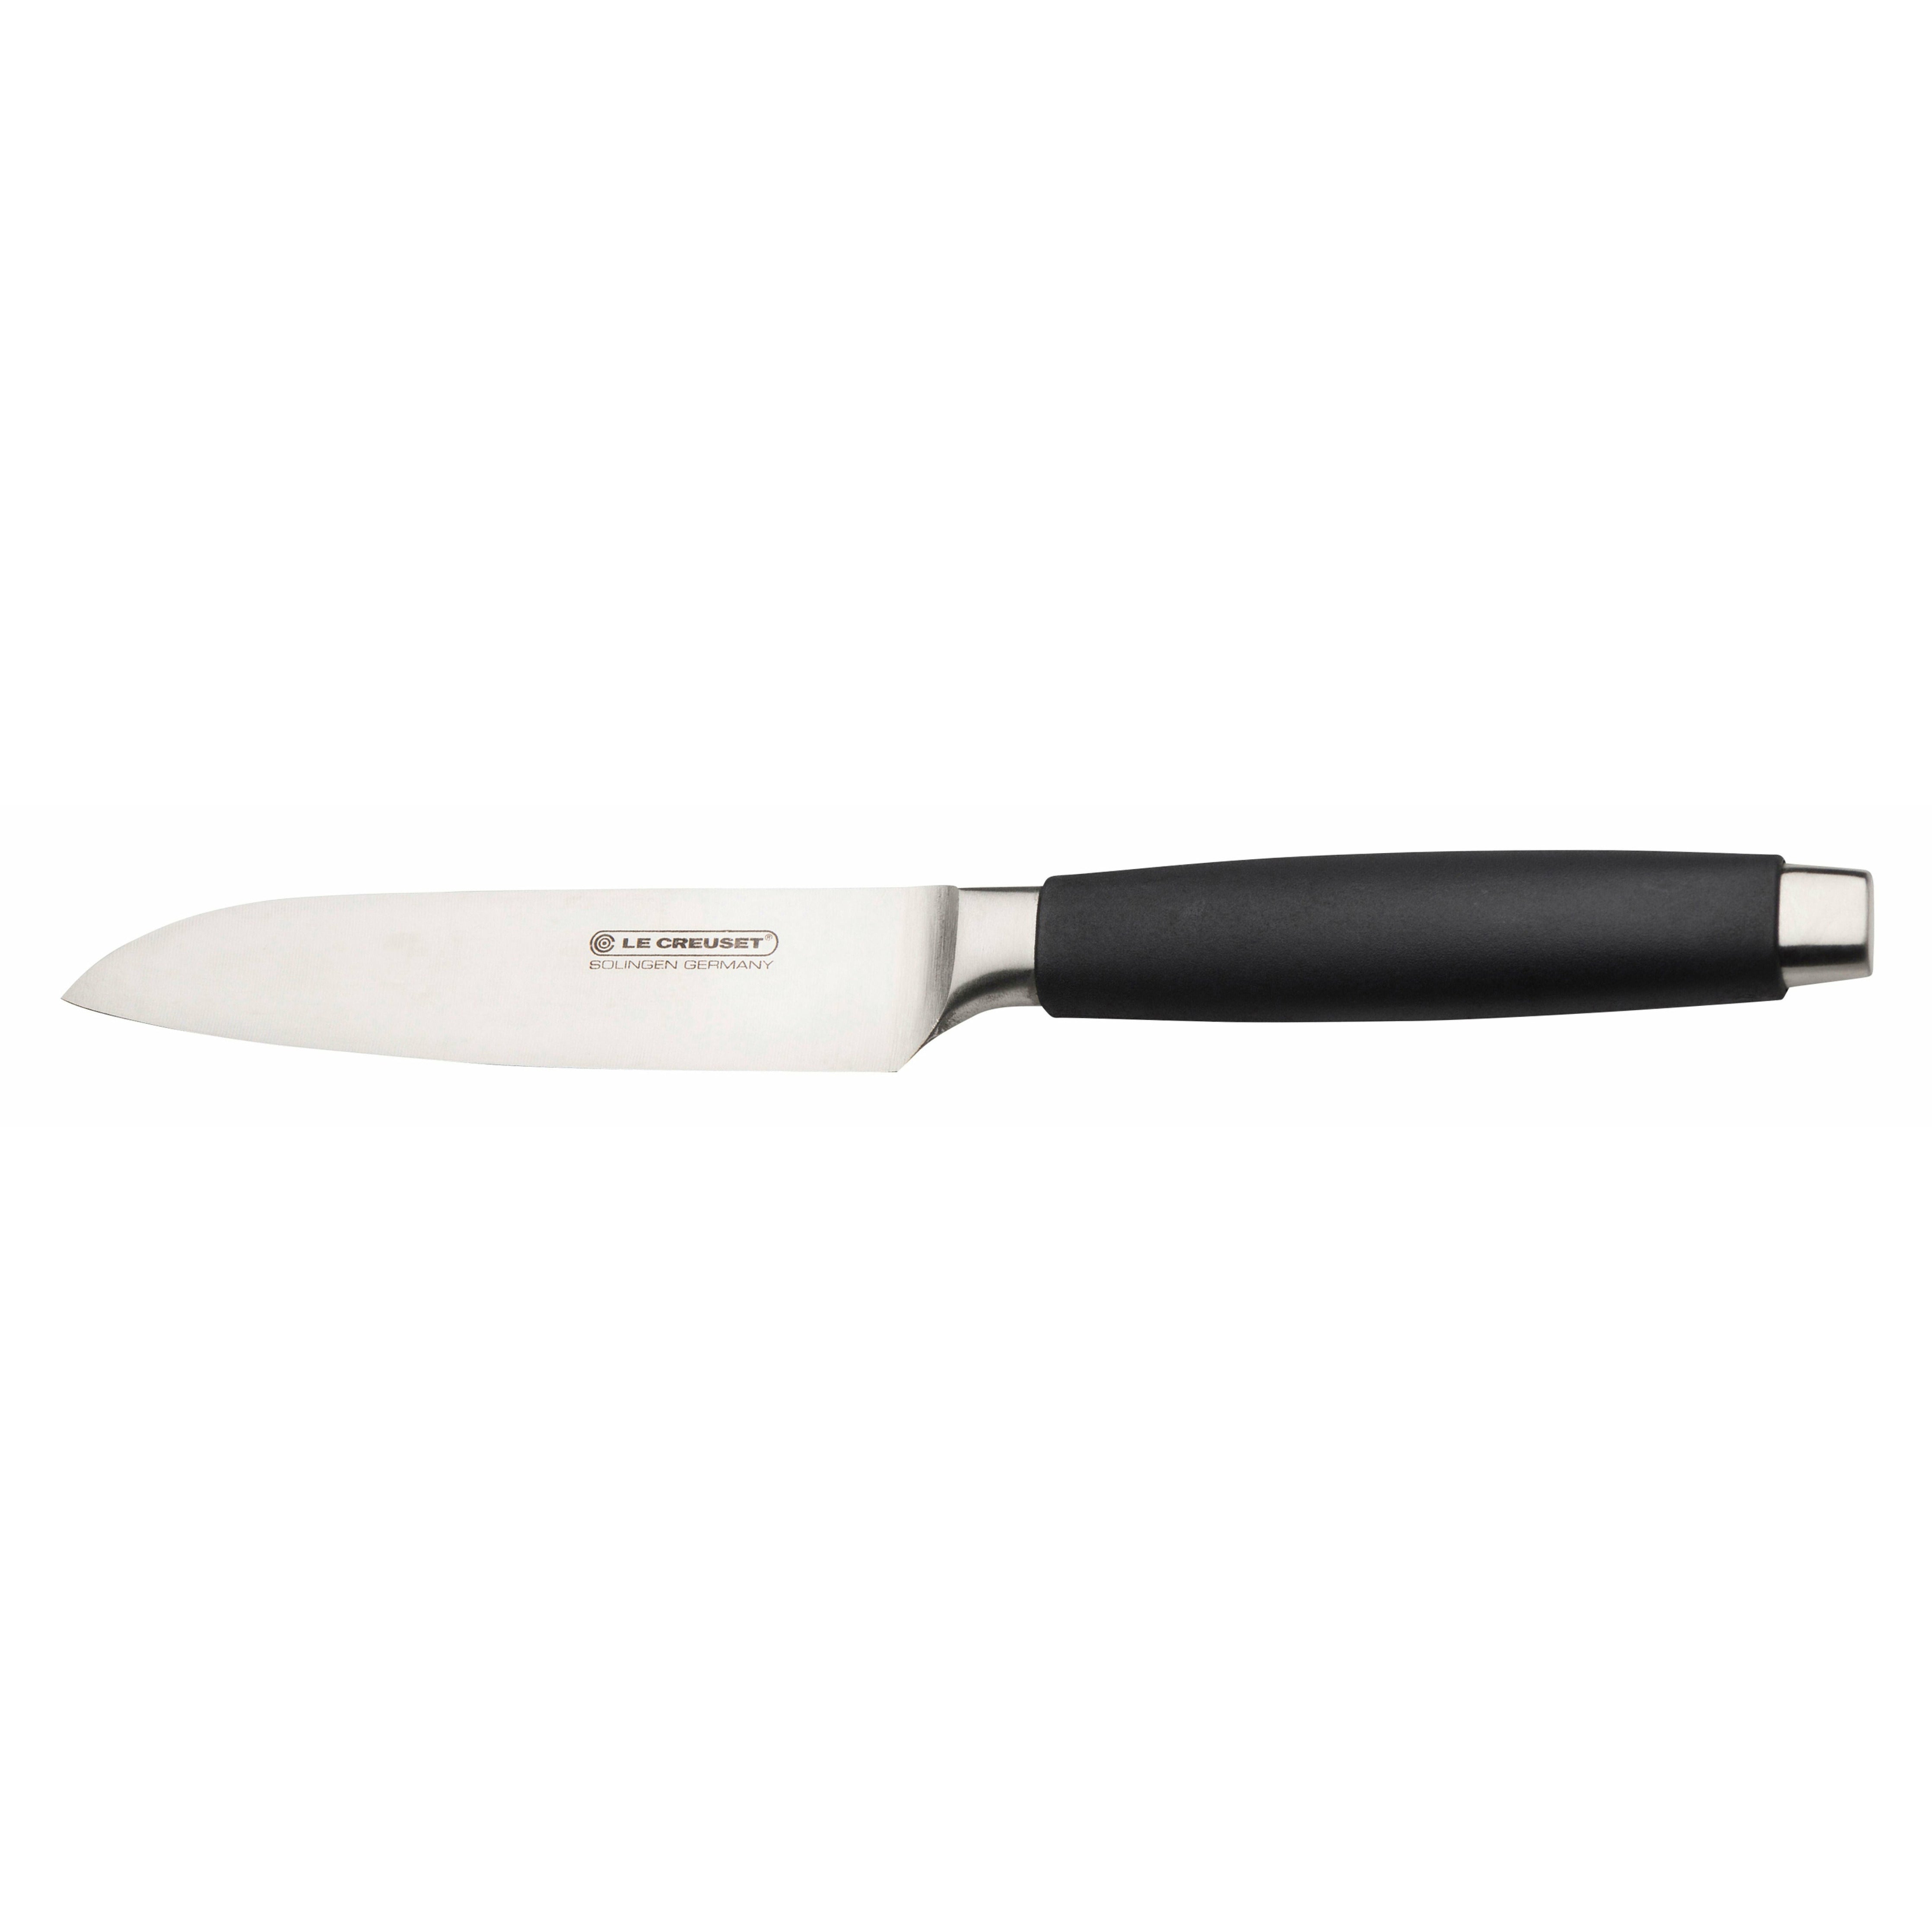 Le Creuset Santoku Nůž Standard s černou rukojetí, 13 cm